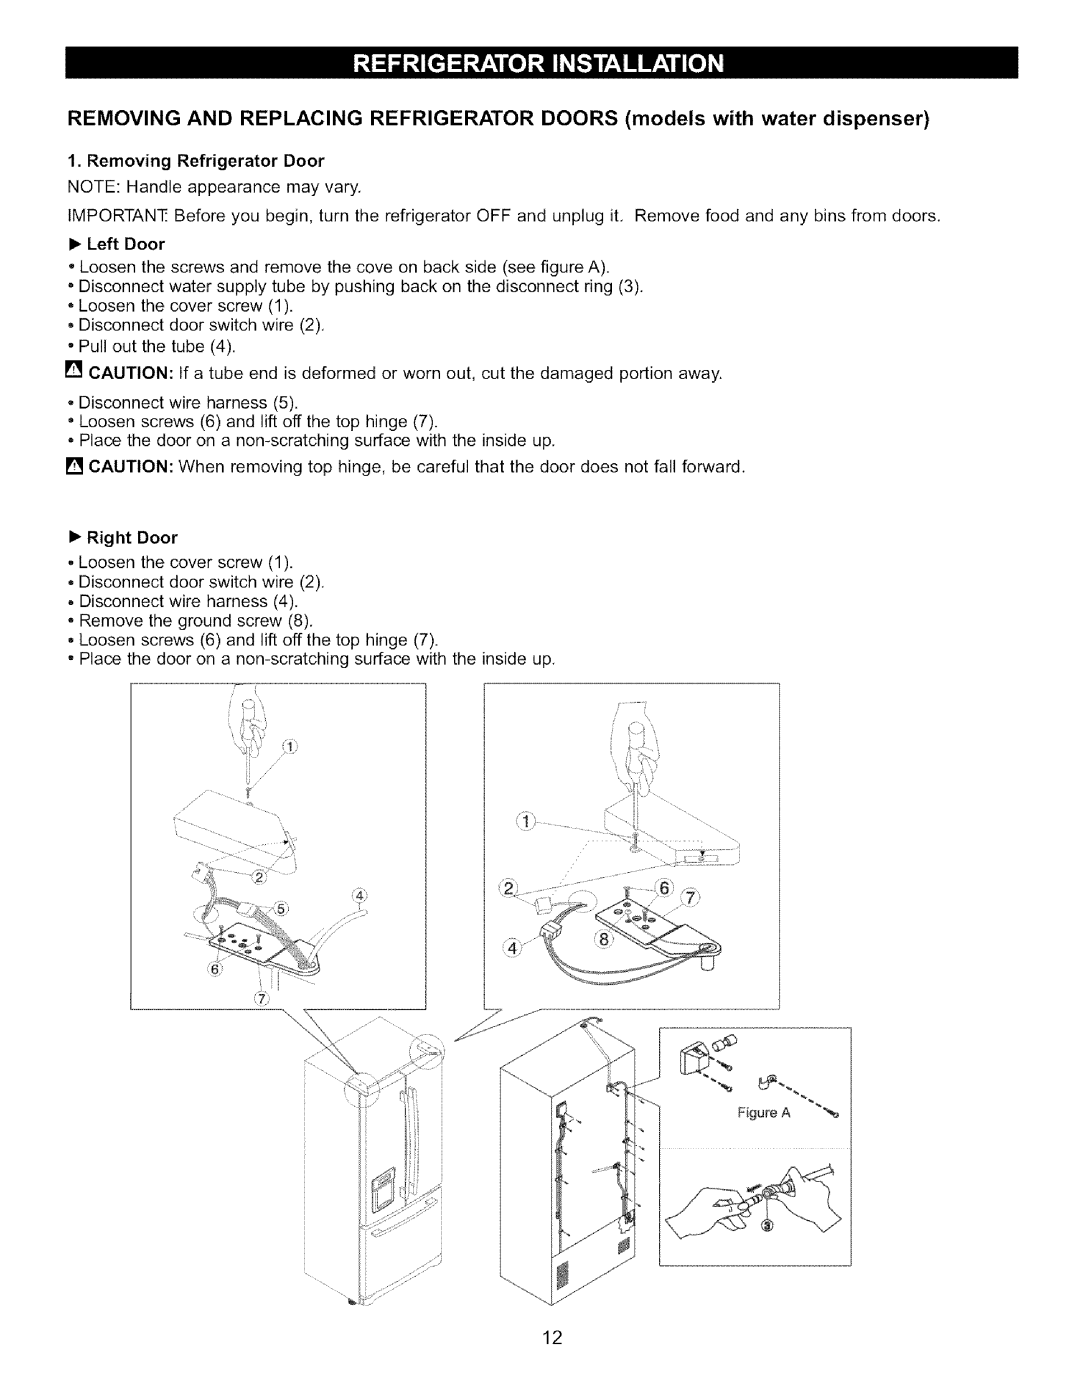 LG Electronics LFC22760 manual Removing Refrigerator Door, •Left Door, •Right Door 